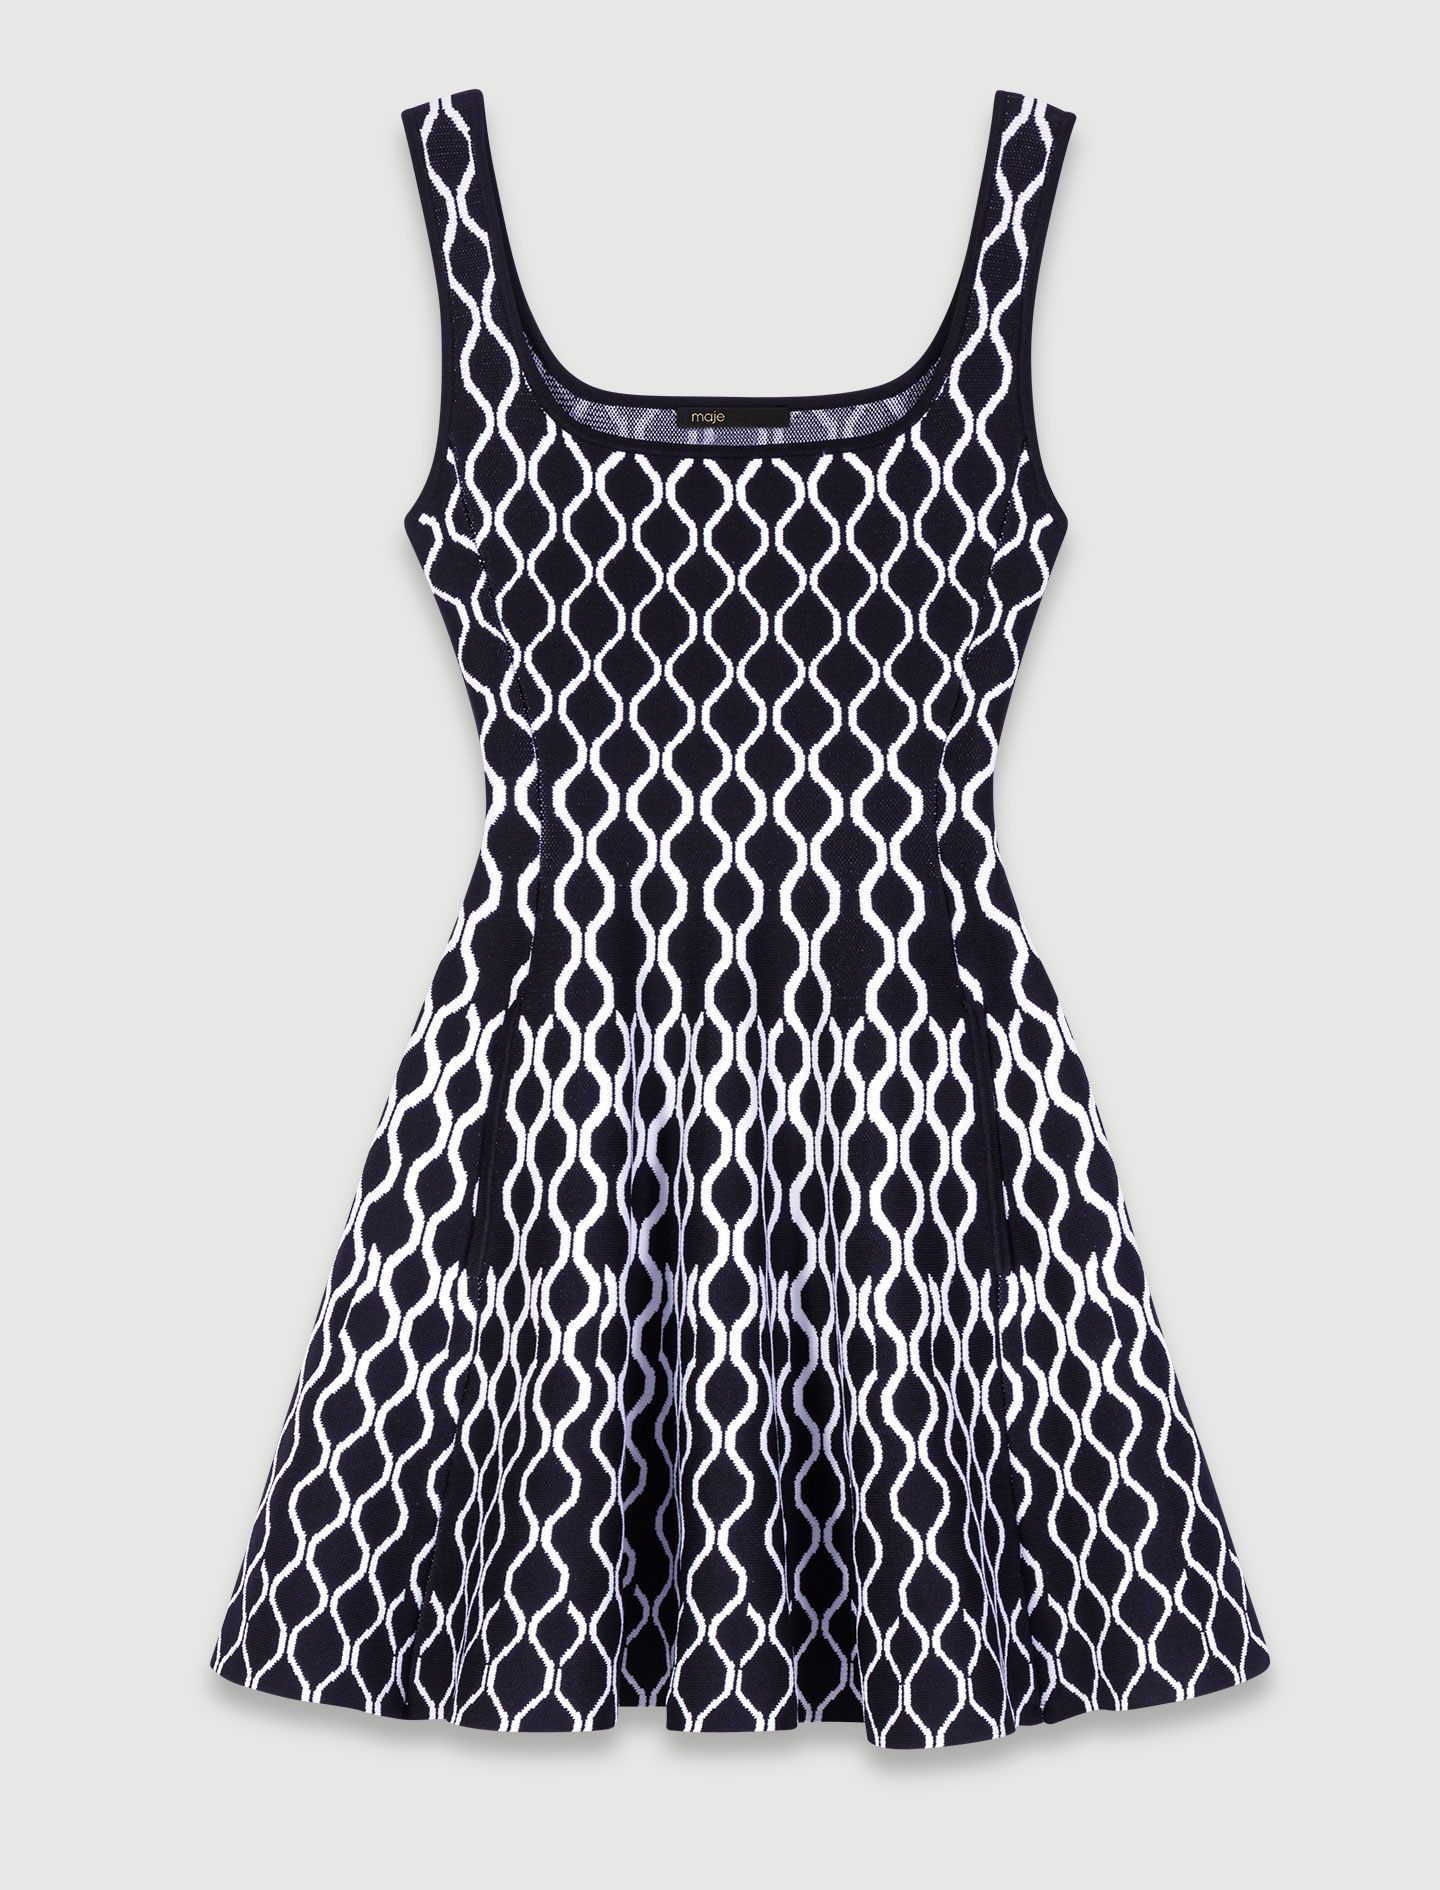 Sleeveless jumper dress - Black / White